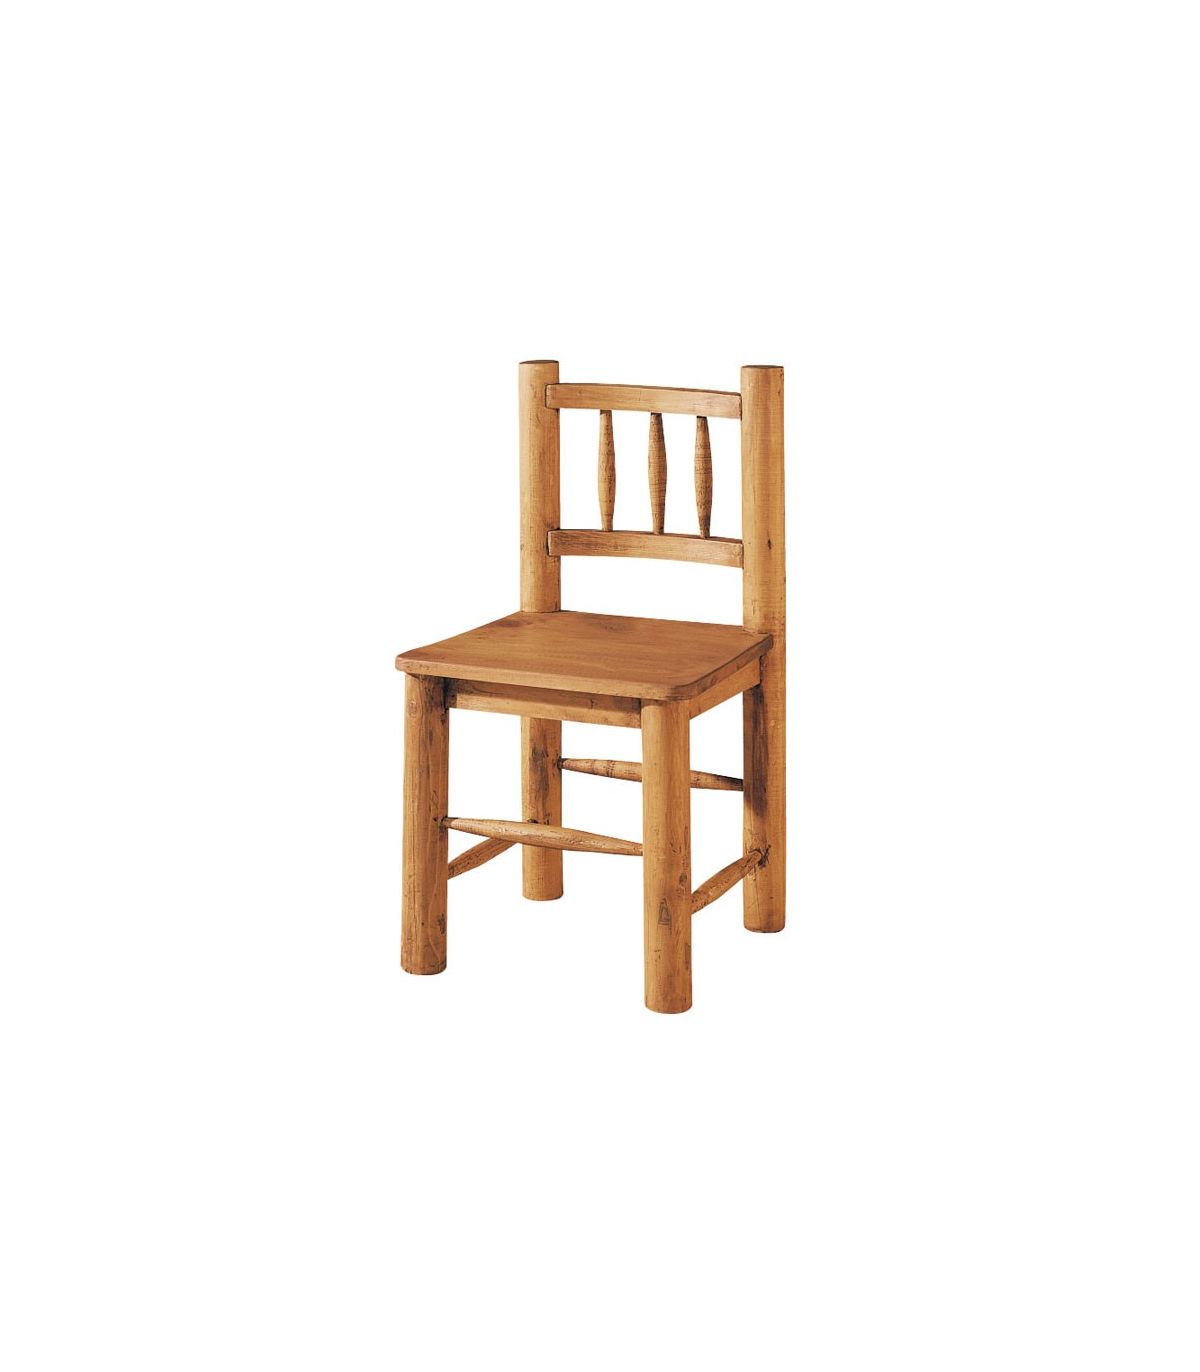 sillas de madera rusticas - Buscar con Google  Chair design wooden, Wood  chair design, Wooden dining table designs